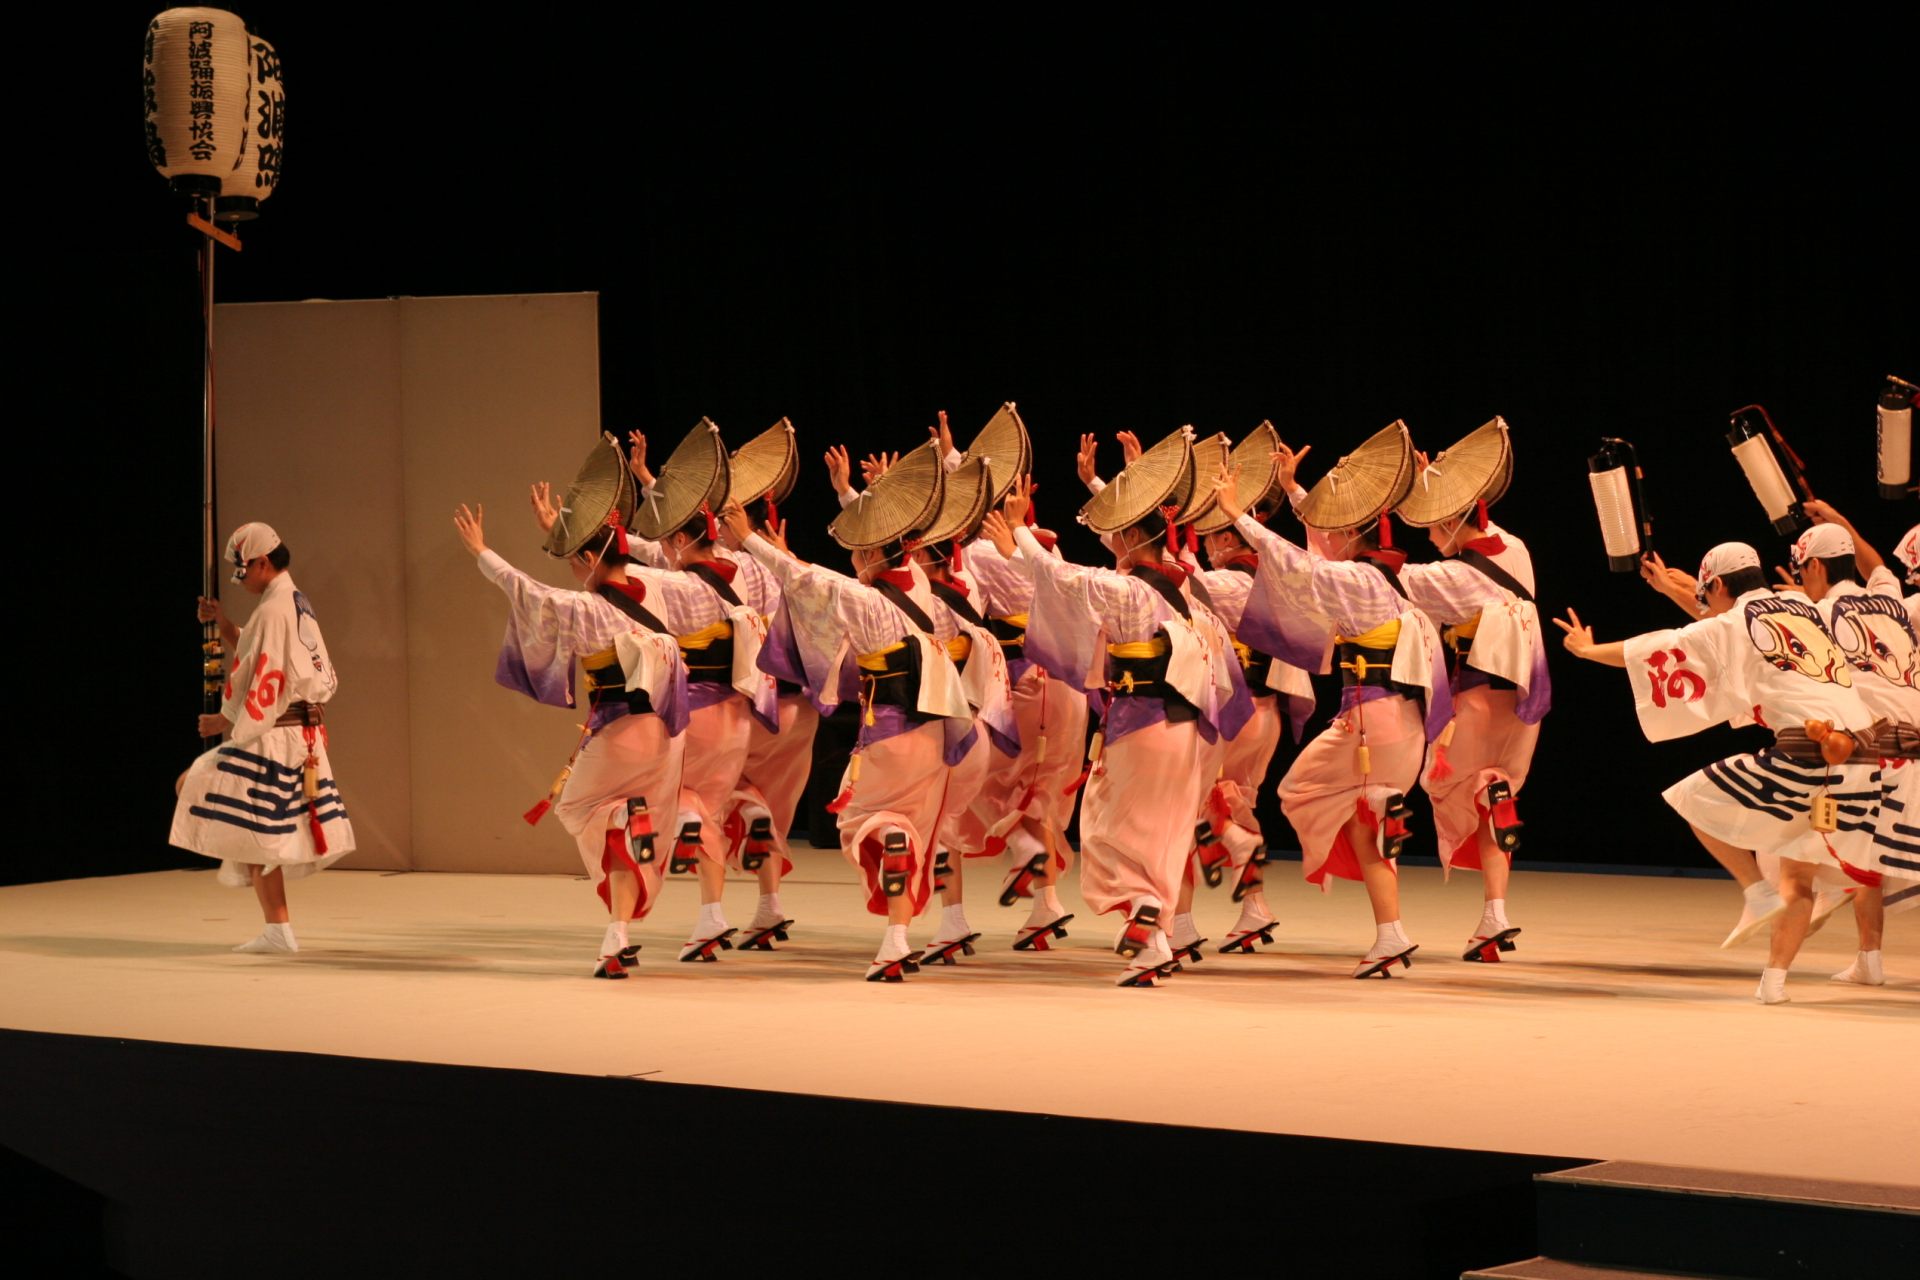 阿波おどり会館では一年中、阿波おどりの公演を実施。目の前で徳島が誇る伝統を見学することができます。